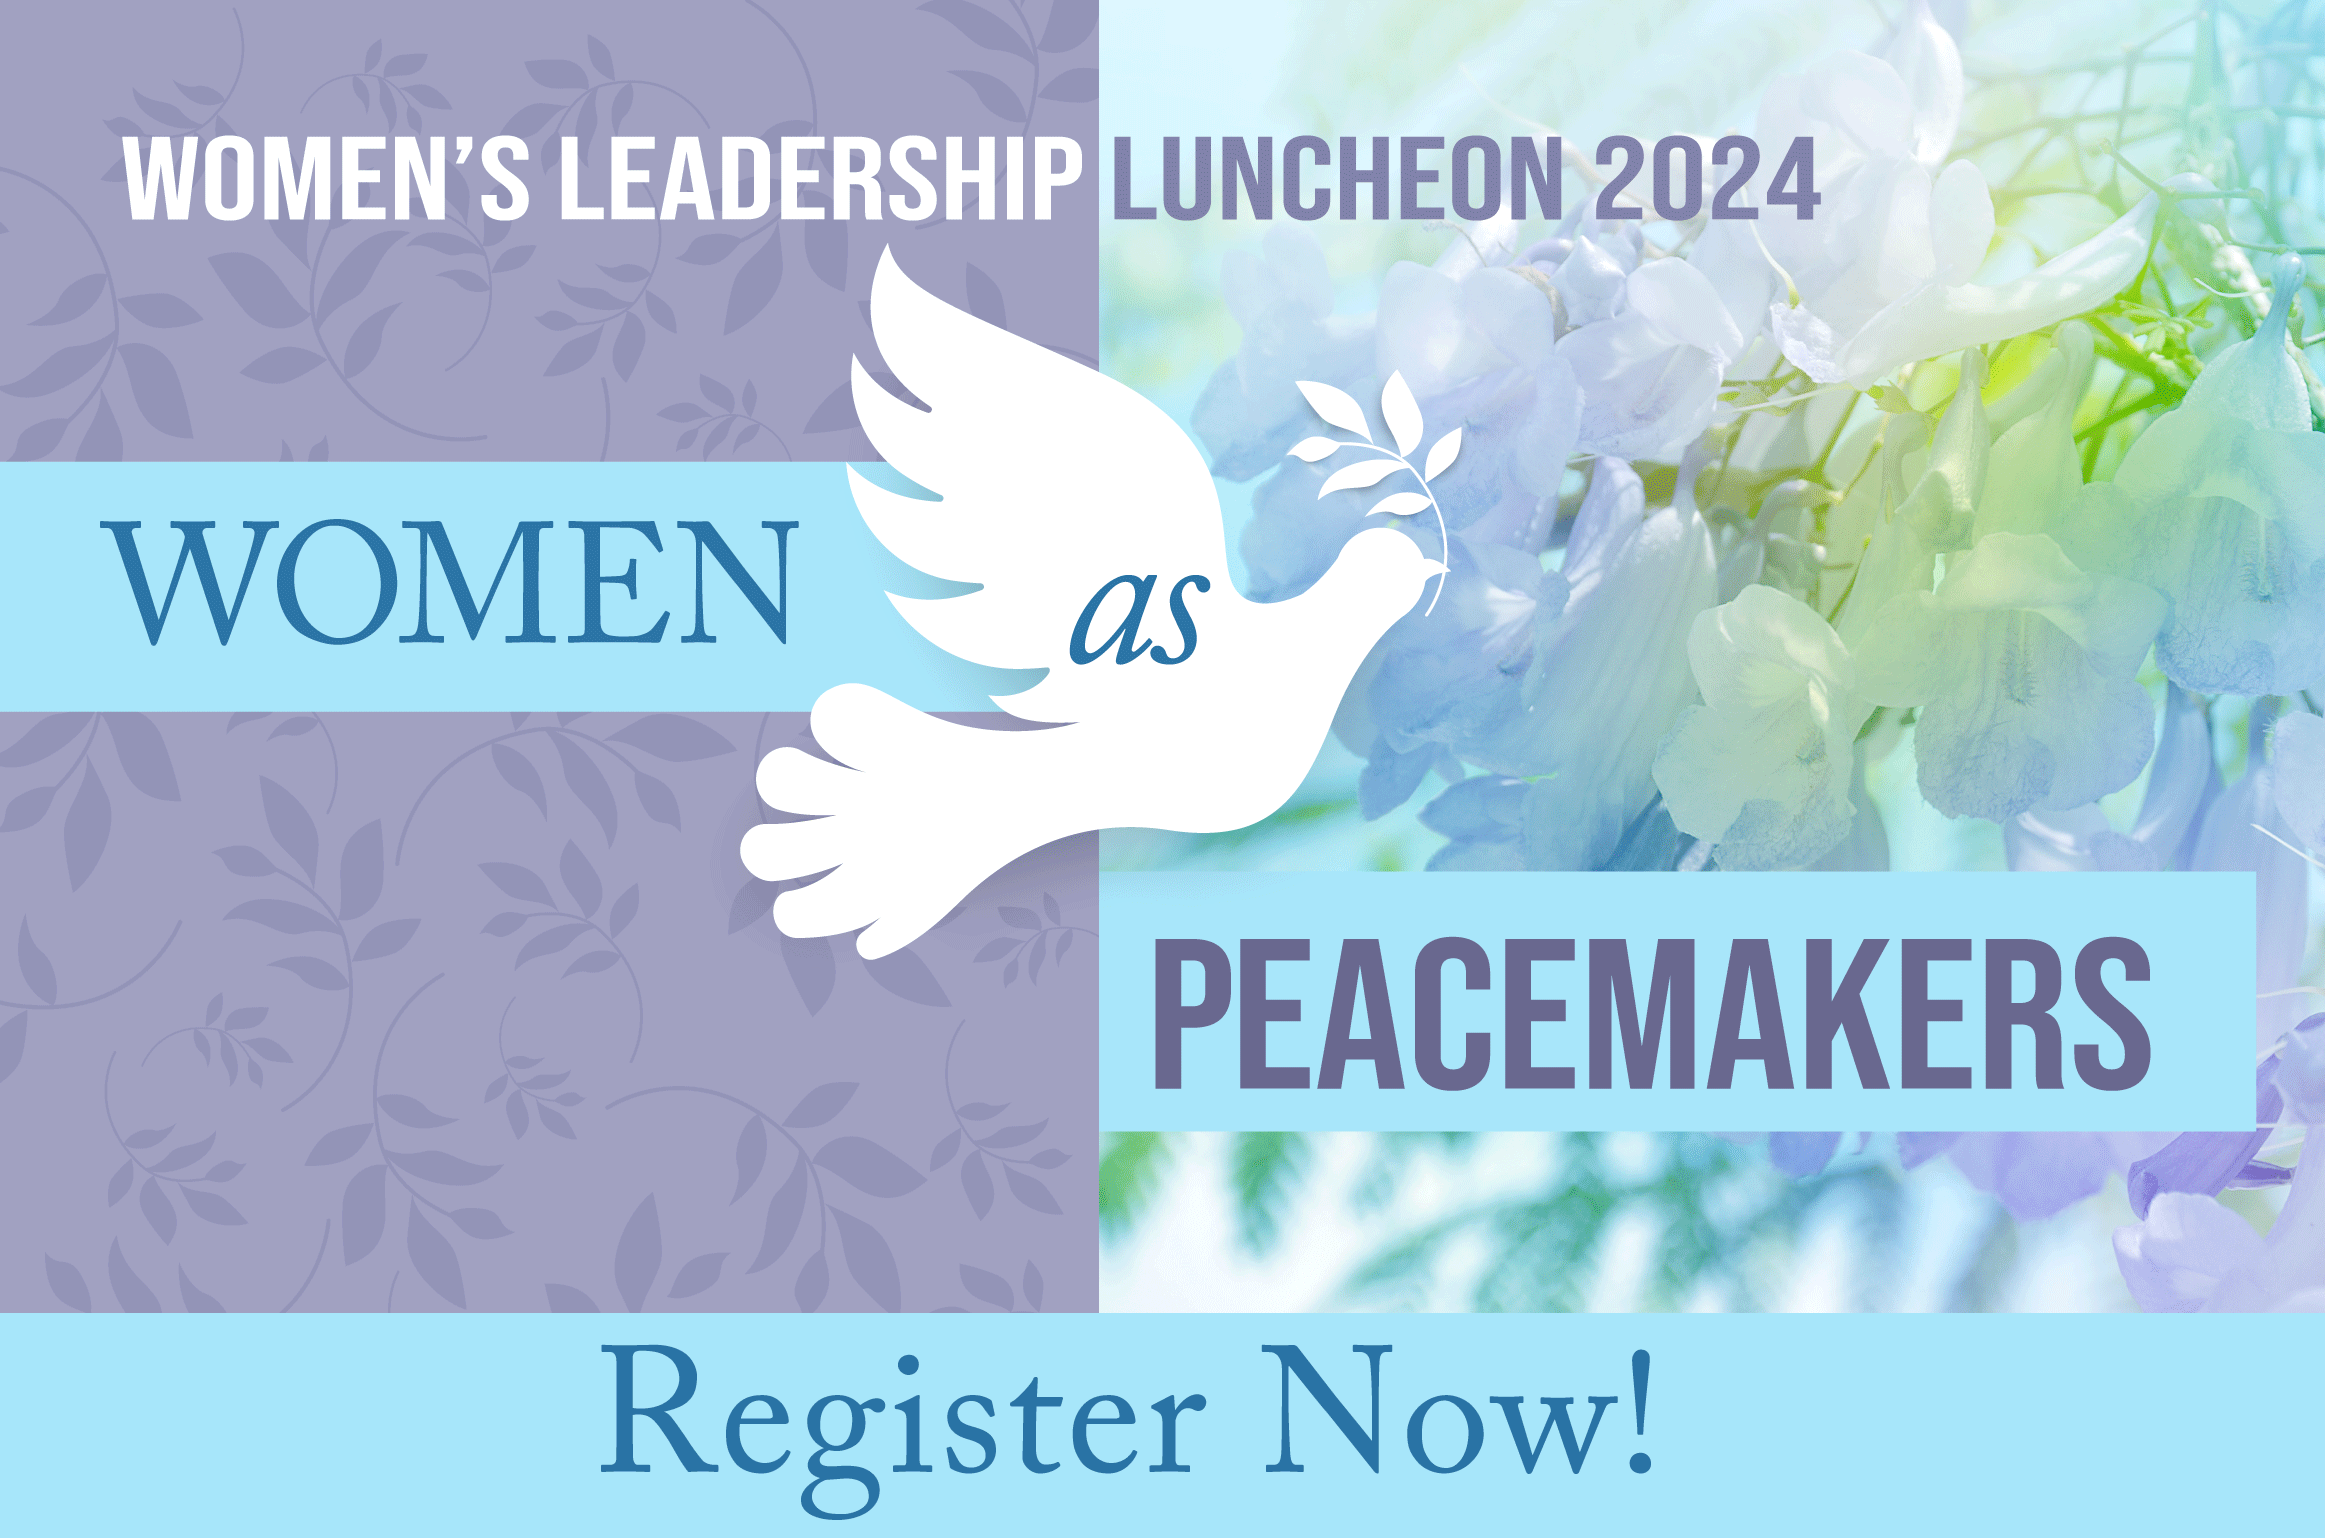 WLL 2024 Women's Leadership Luncheon event slider, register now.